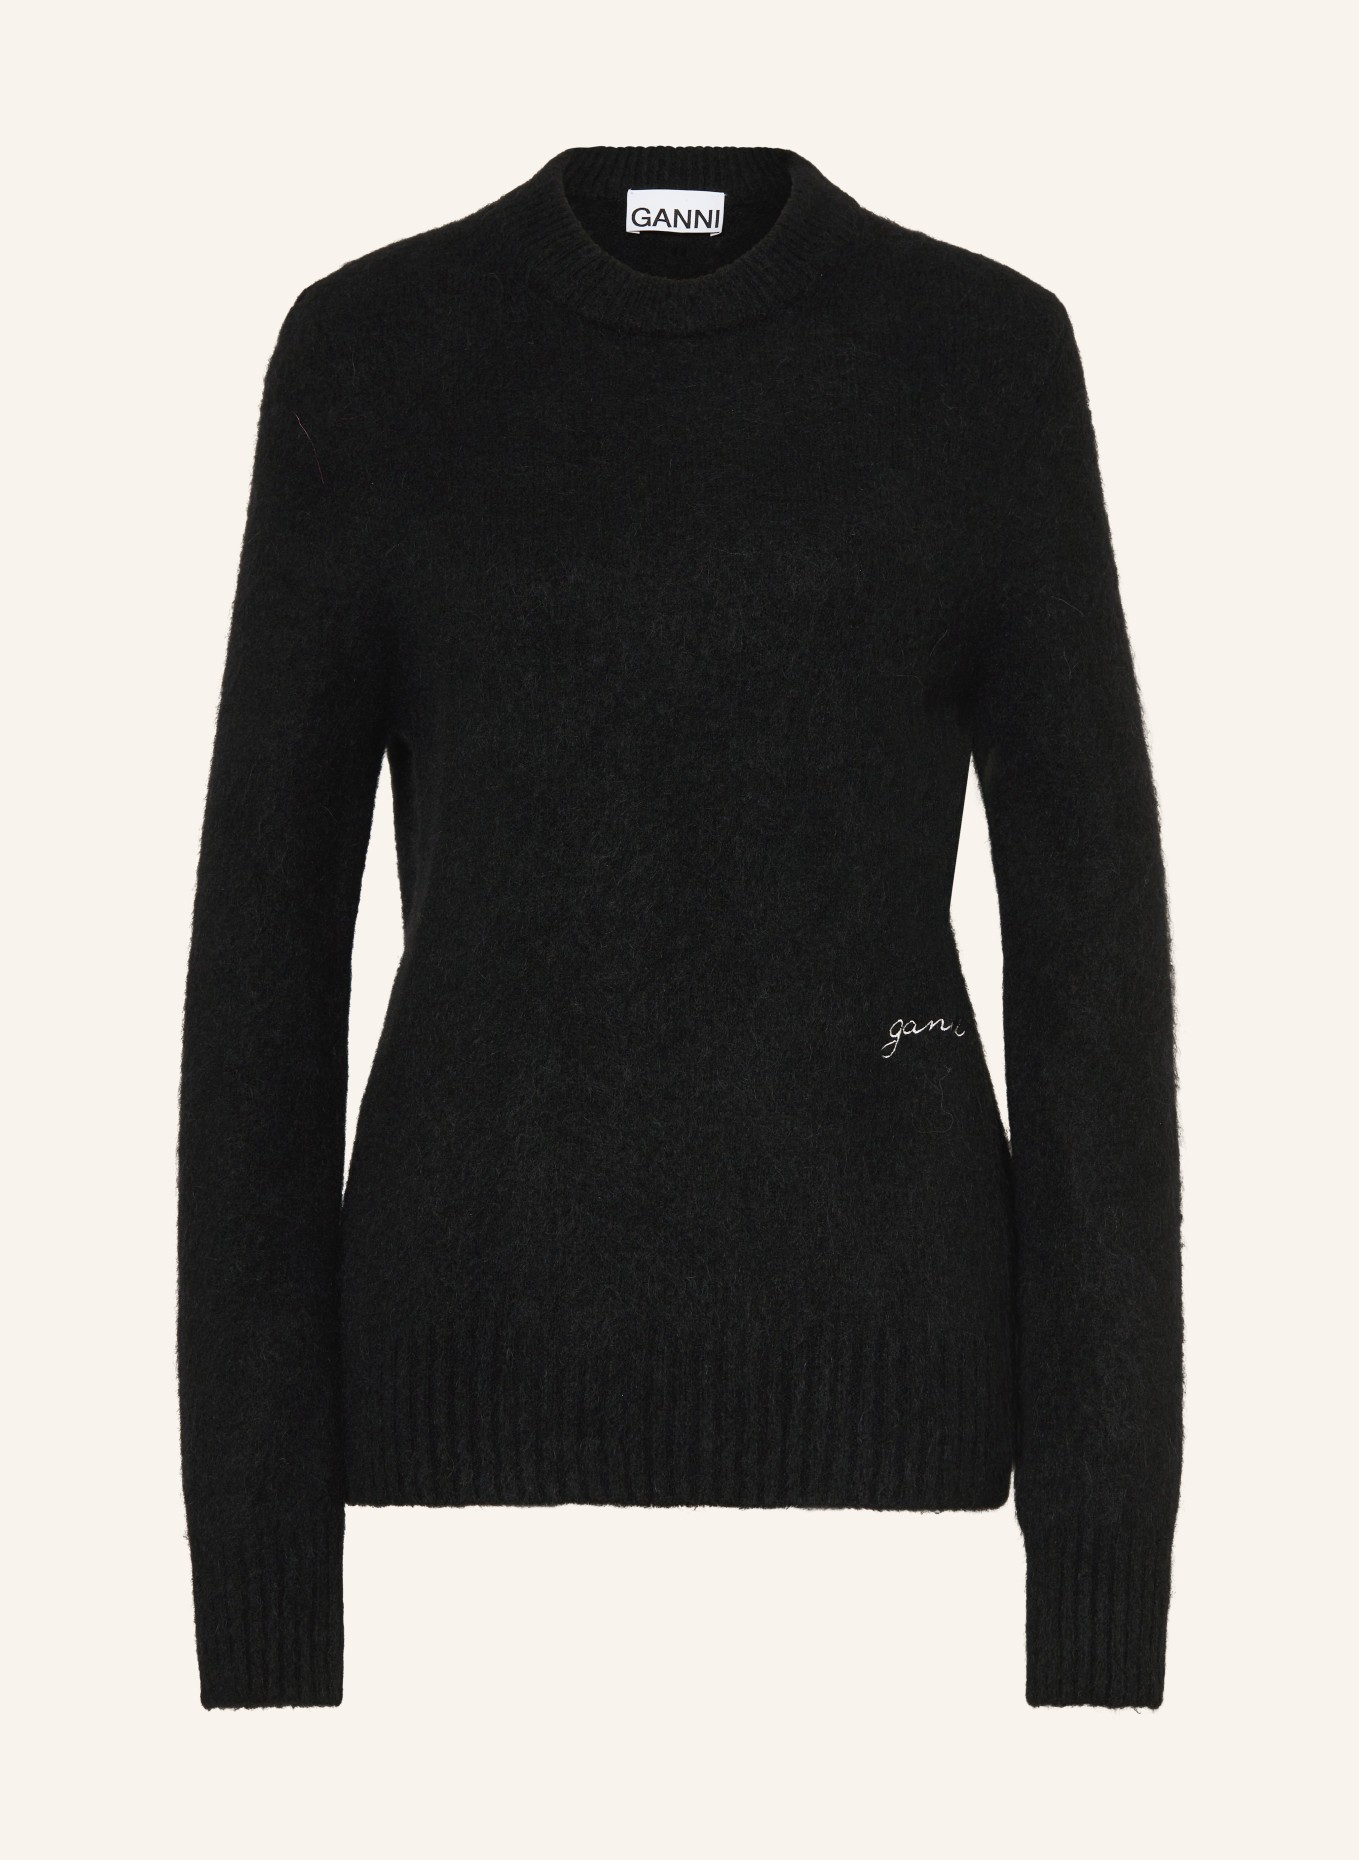 GANNI Sweater with alpaca, Color: BLACK (Image 1)